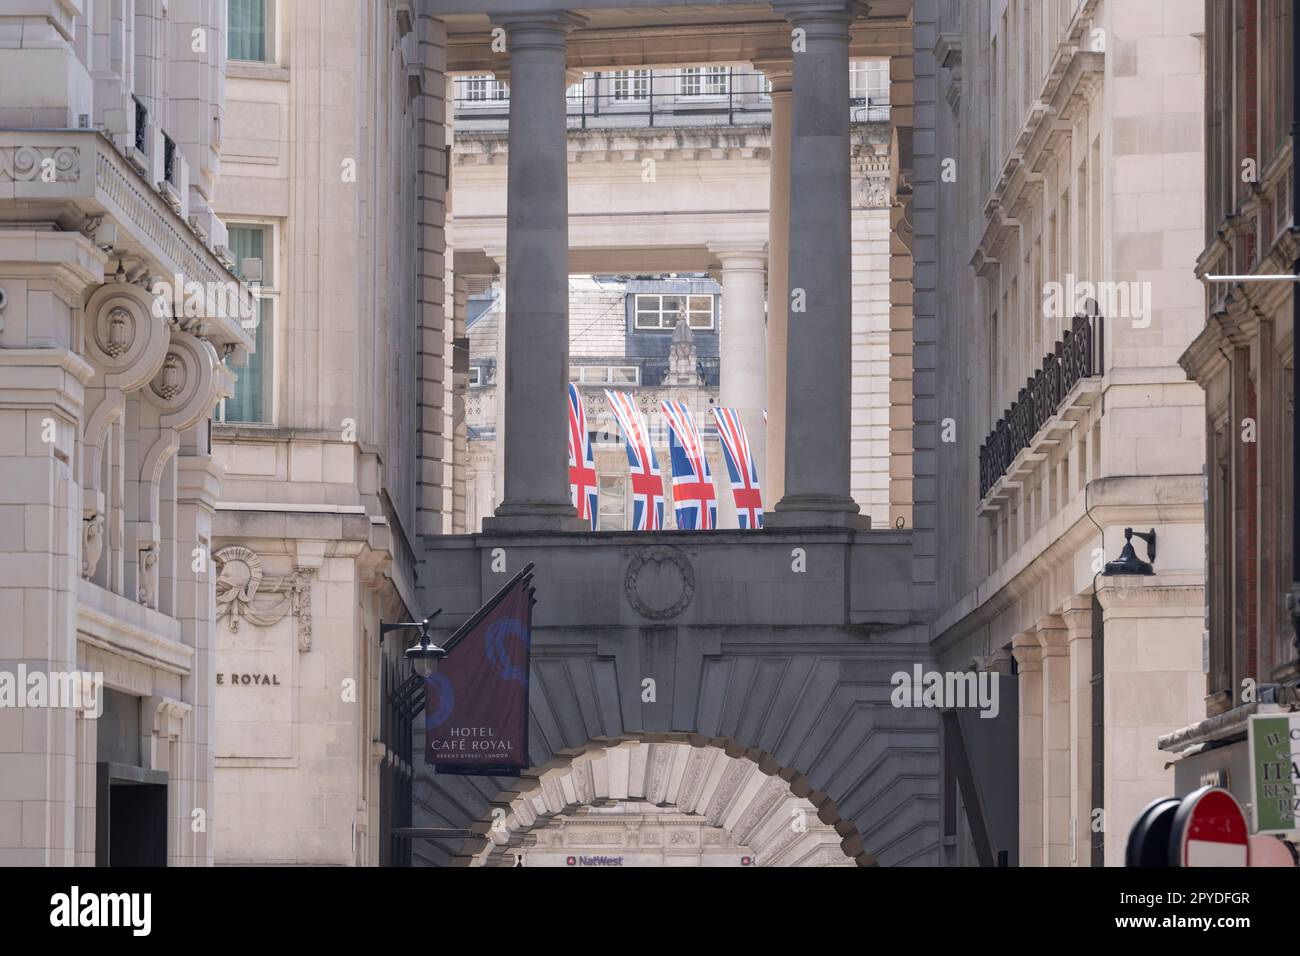 Nur vier Tage vor der Krönung von König Karl III., nach dem Tod seiner Mutter, Königin Elzabeth II. Im letzten Jahr, hängen Union Jack Flaggen über der Regent Street, am 3. Mai 2023, in London, England. Stockfoto